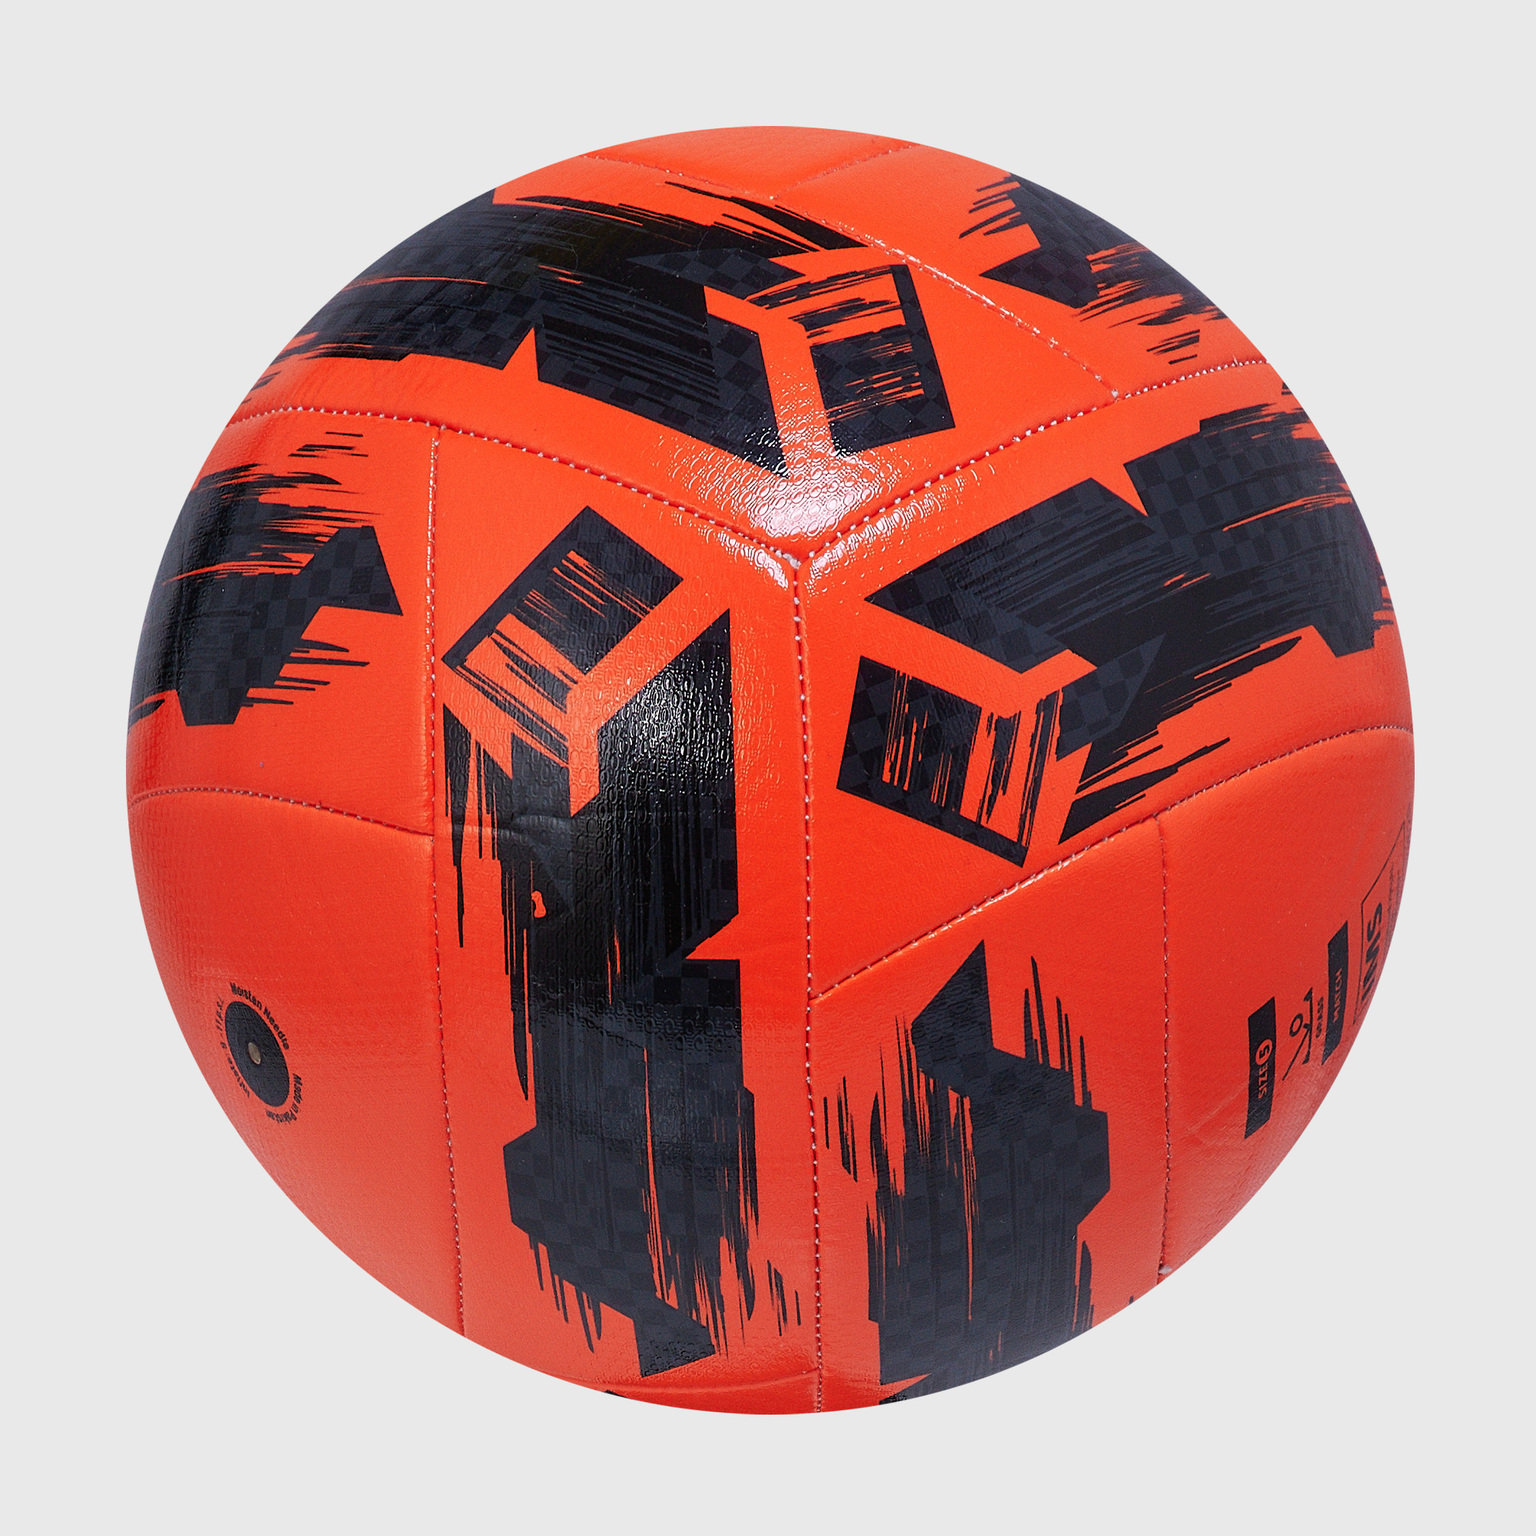 Футбольный мяч Umbro Neo Swerve 26485U-095